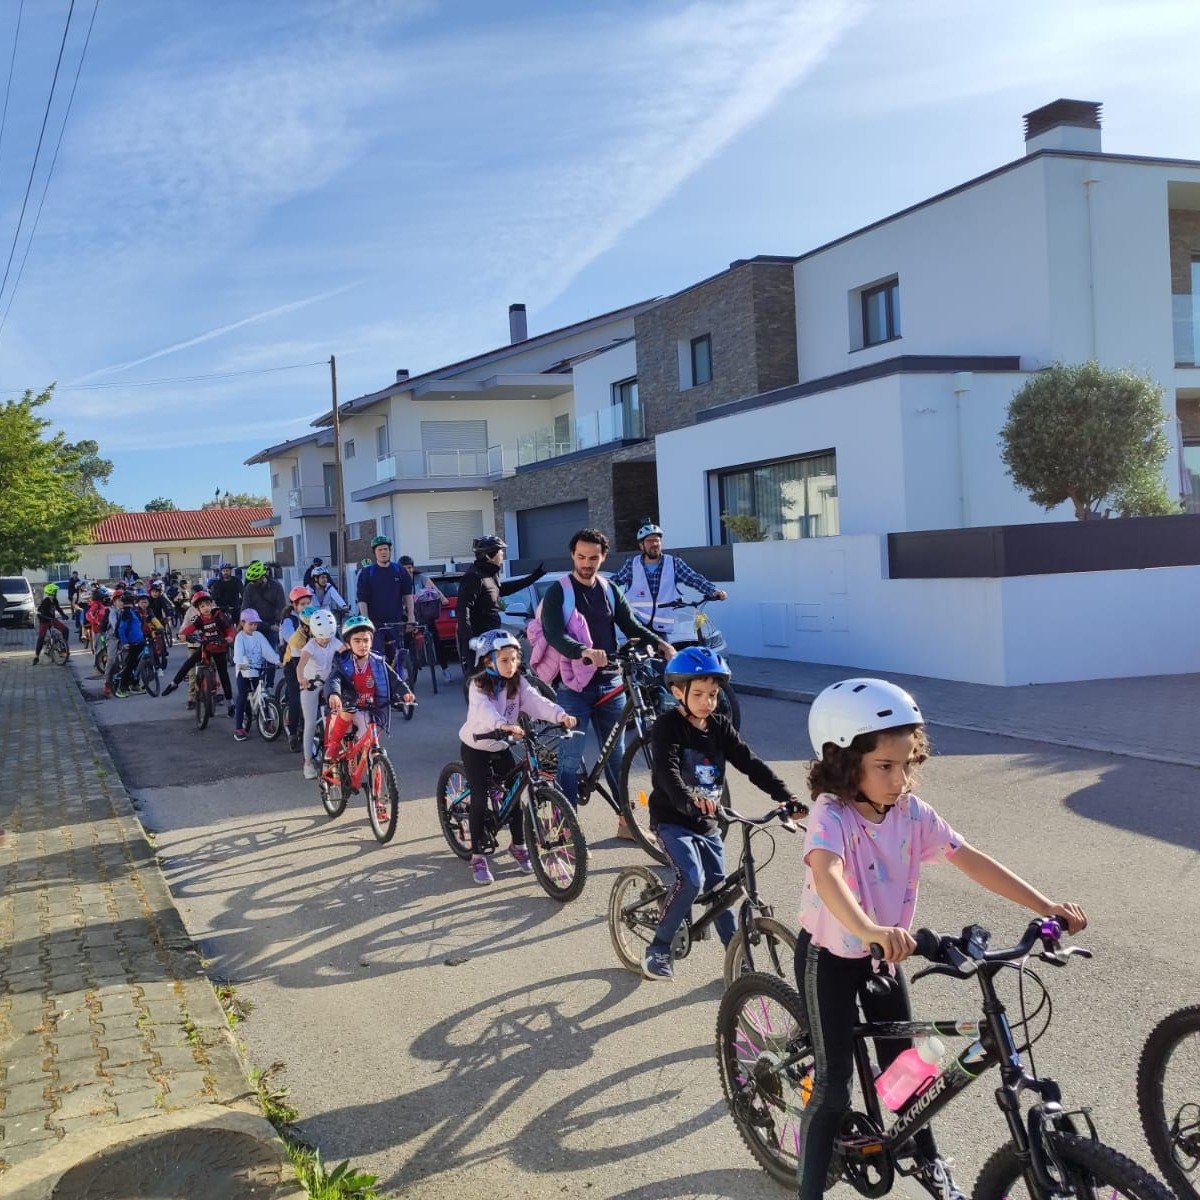 Arrancaram os comboios de bicicletas em Parceiros, Leiria, com mais de 40 crianças! É uma iniciativa da CMLeiria, a experimentar uma dinâmica periurbana. Inscrições para esta e outras escolas de Leiria em cicloexpresso.pt/inscricoes/lei…